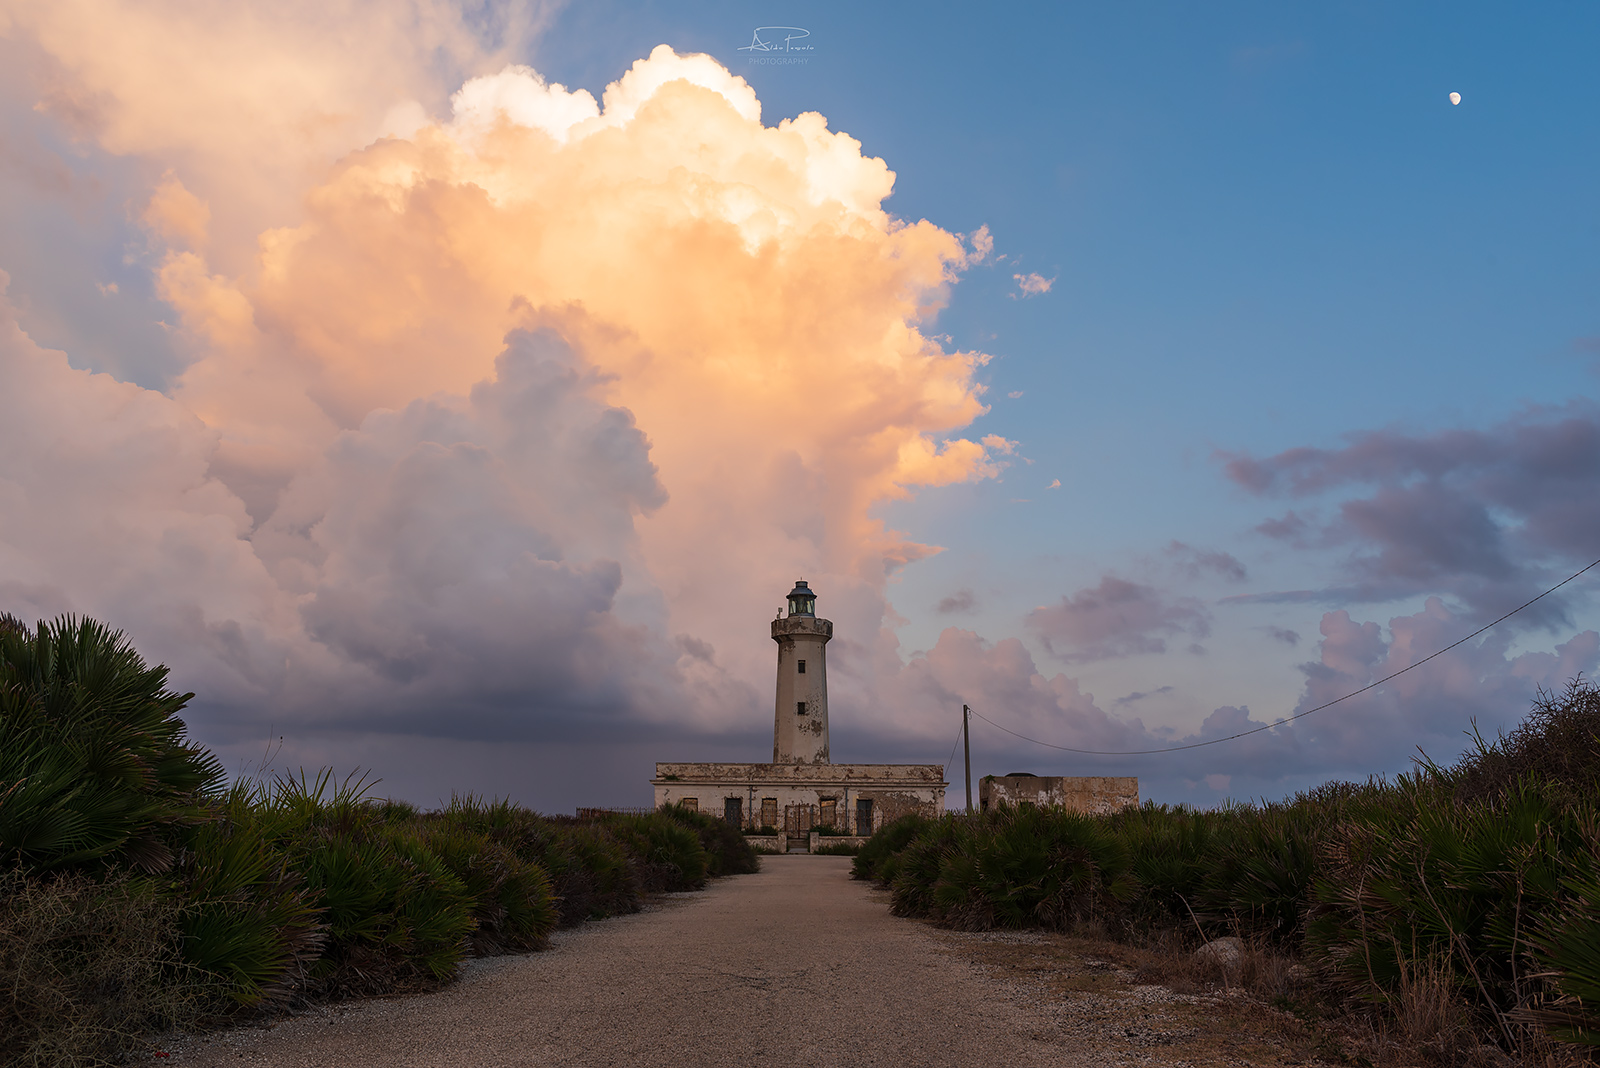 Plemmirio Lighthouse...